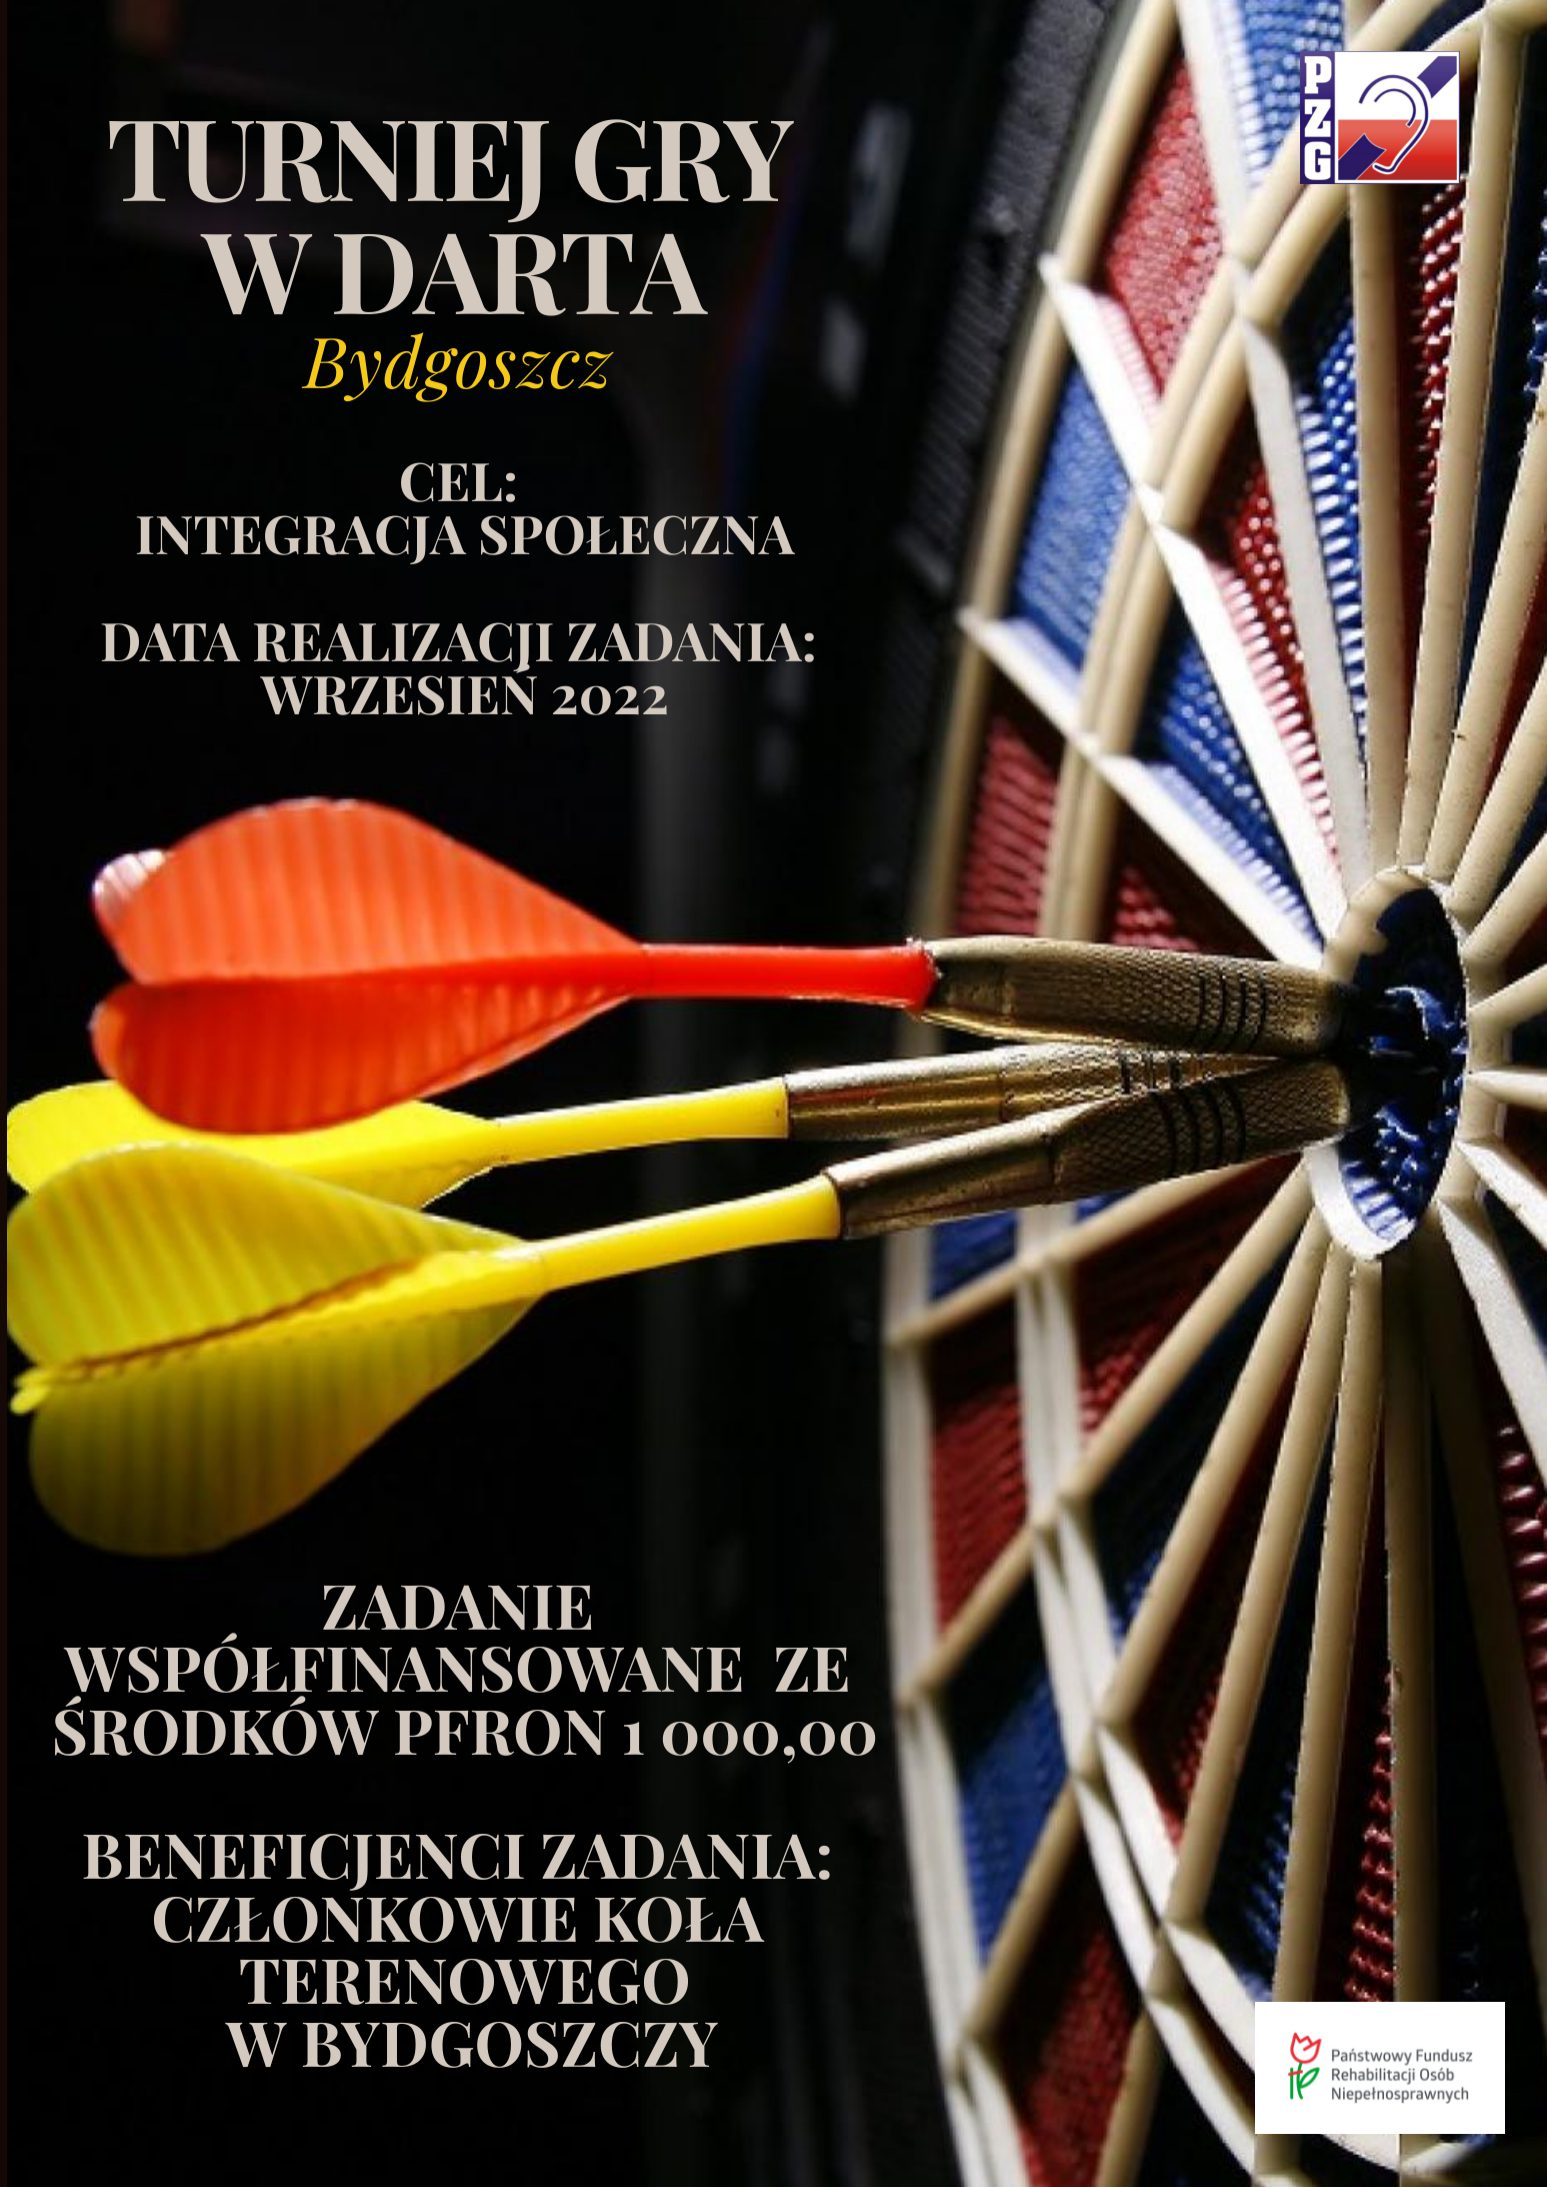 Turniej gry w darta Bydgoszcz